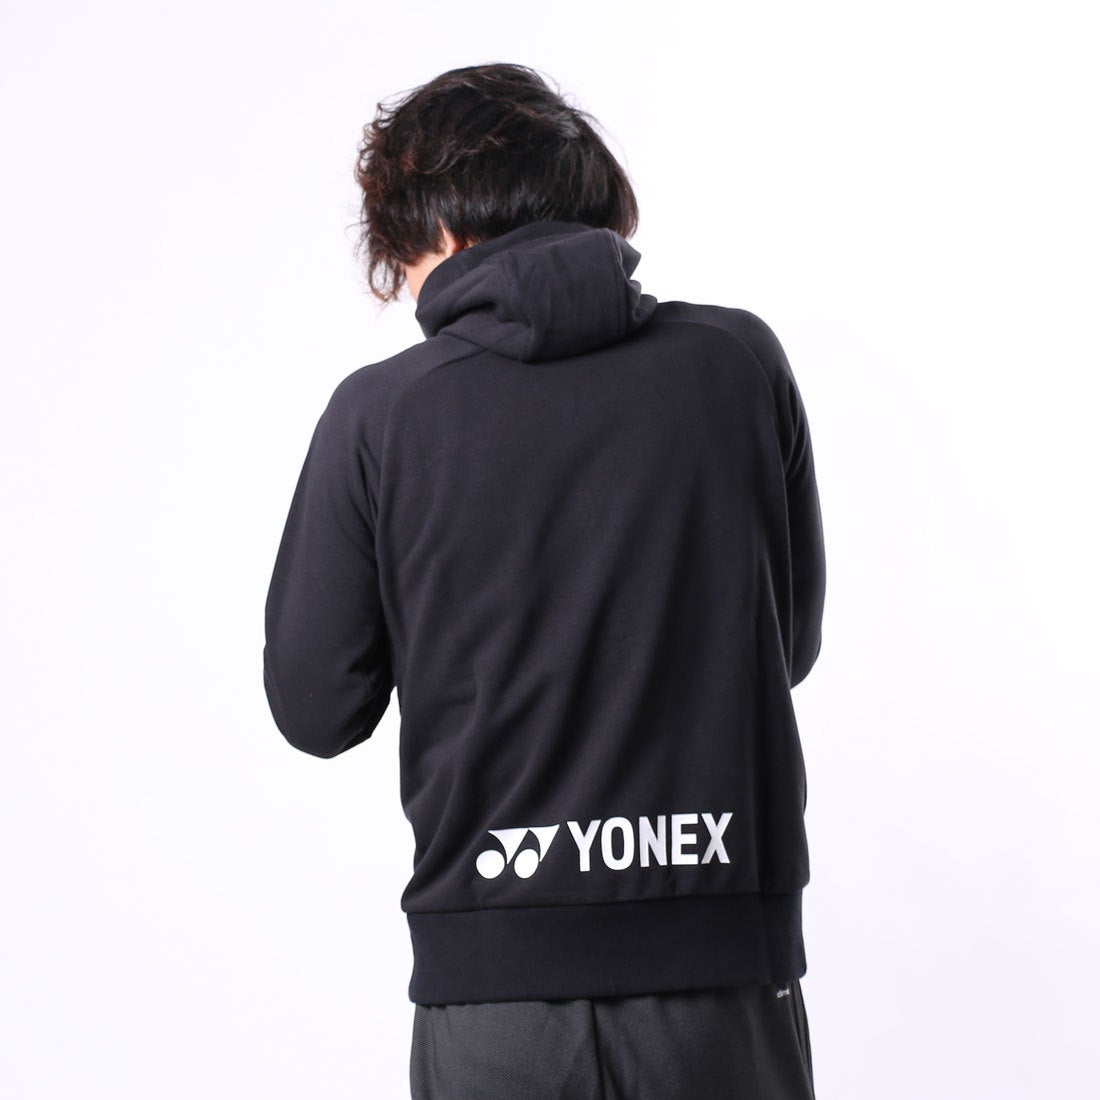 YONEXパーカー - パーカー